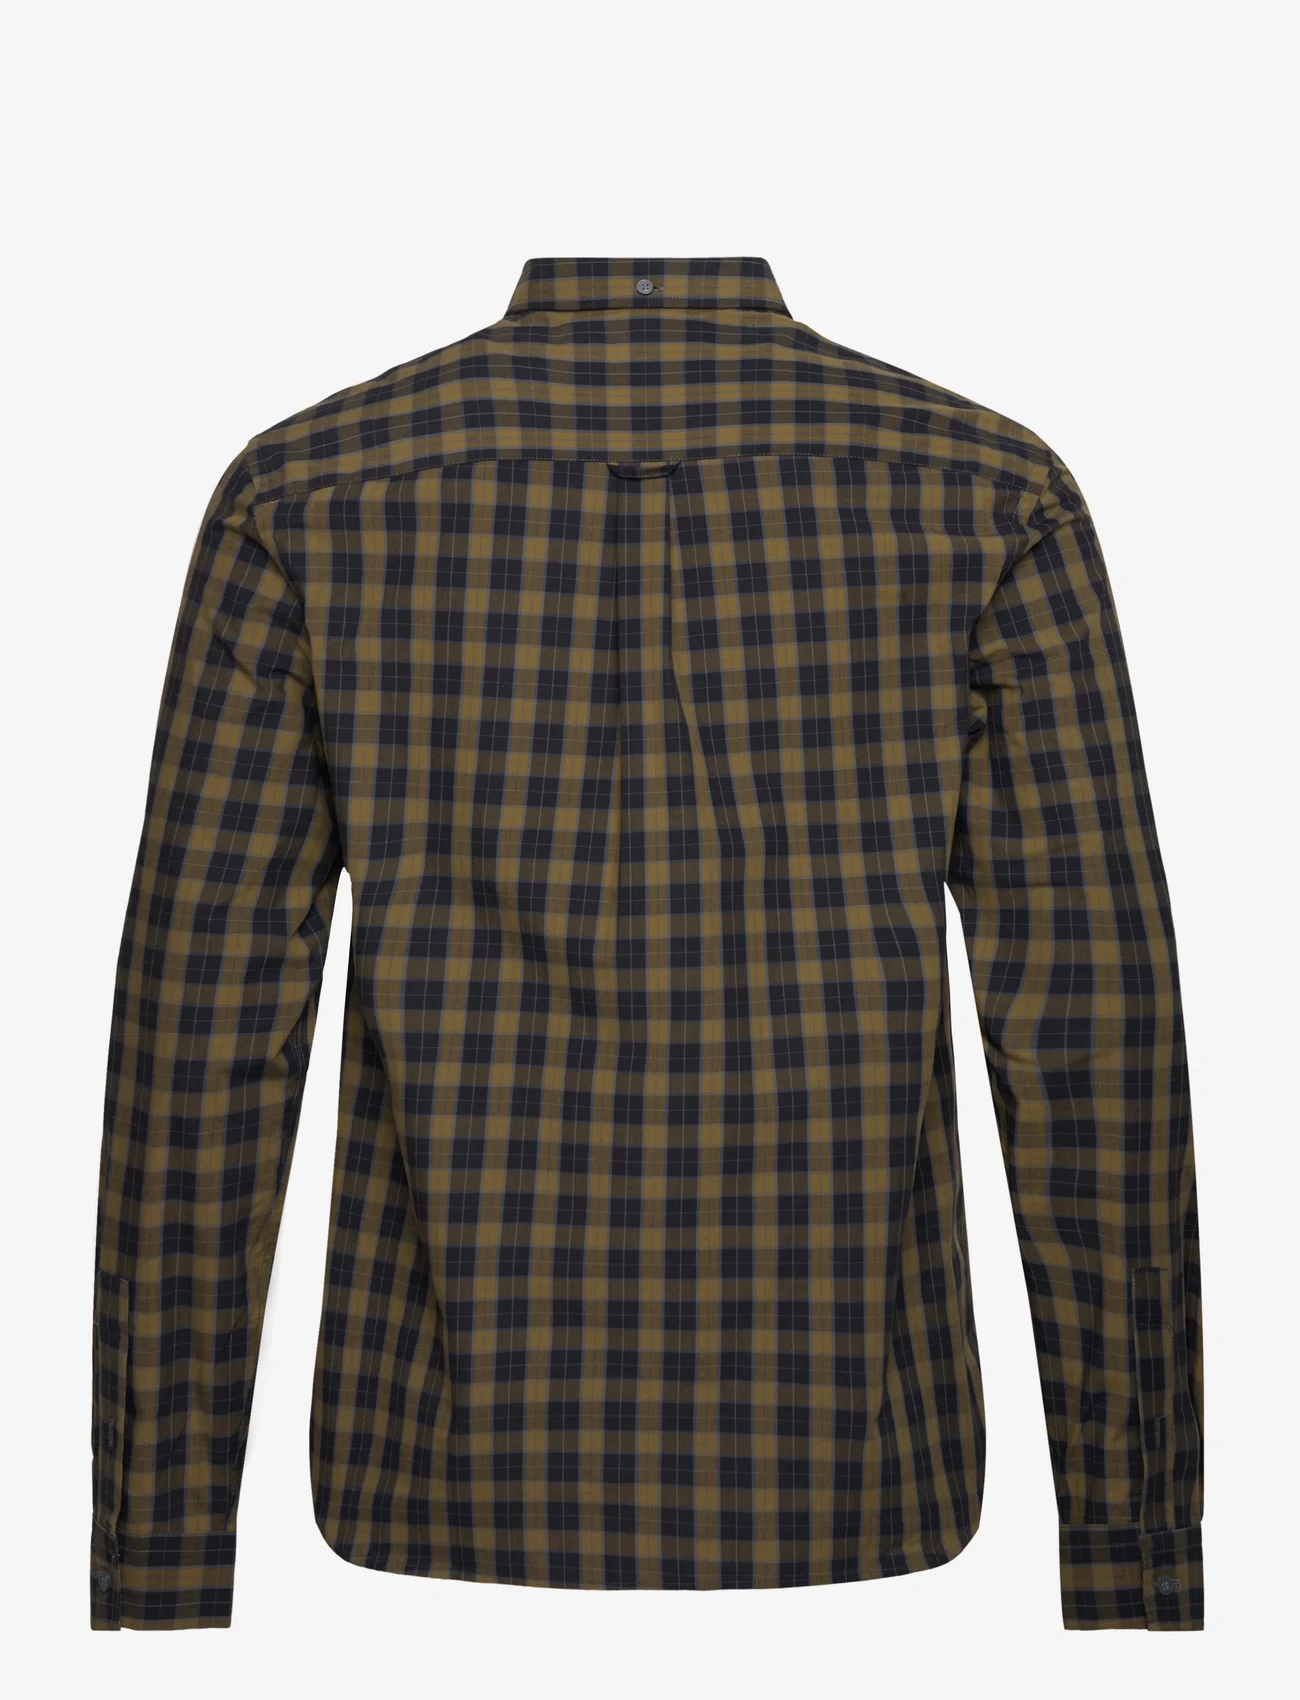 Lyle & Scott - Check Poplin Shirt - ternede skjorter - jet black/ olive - 1